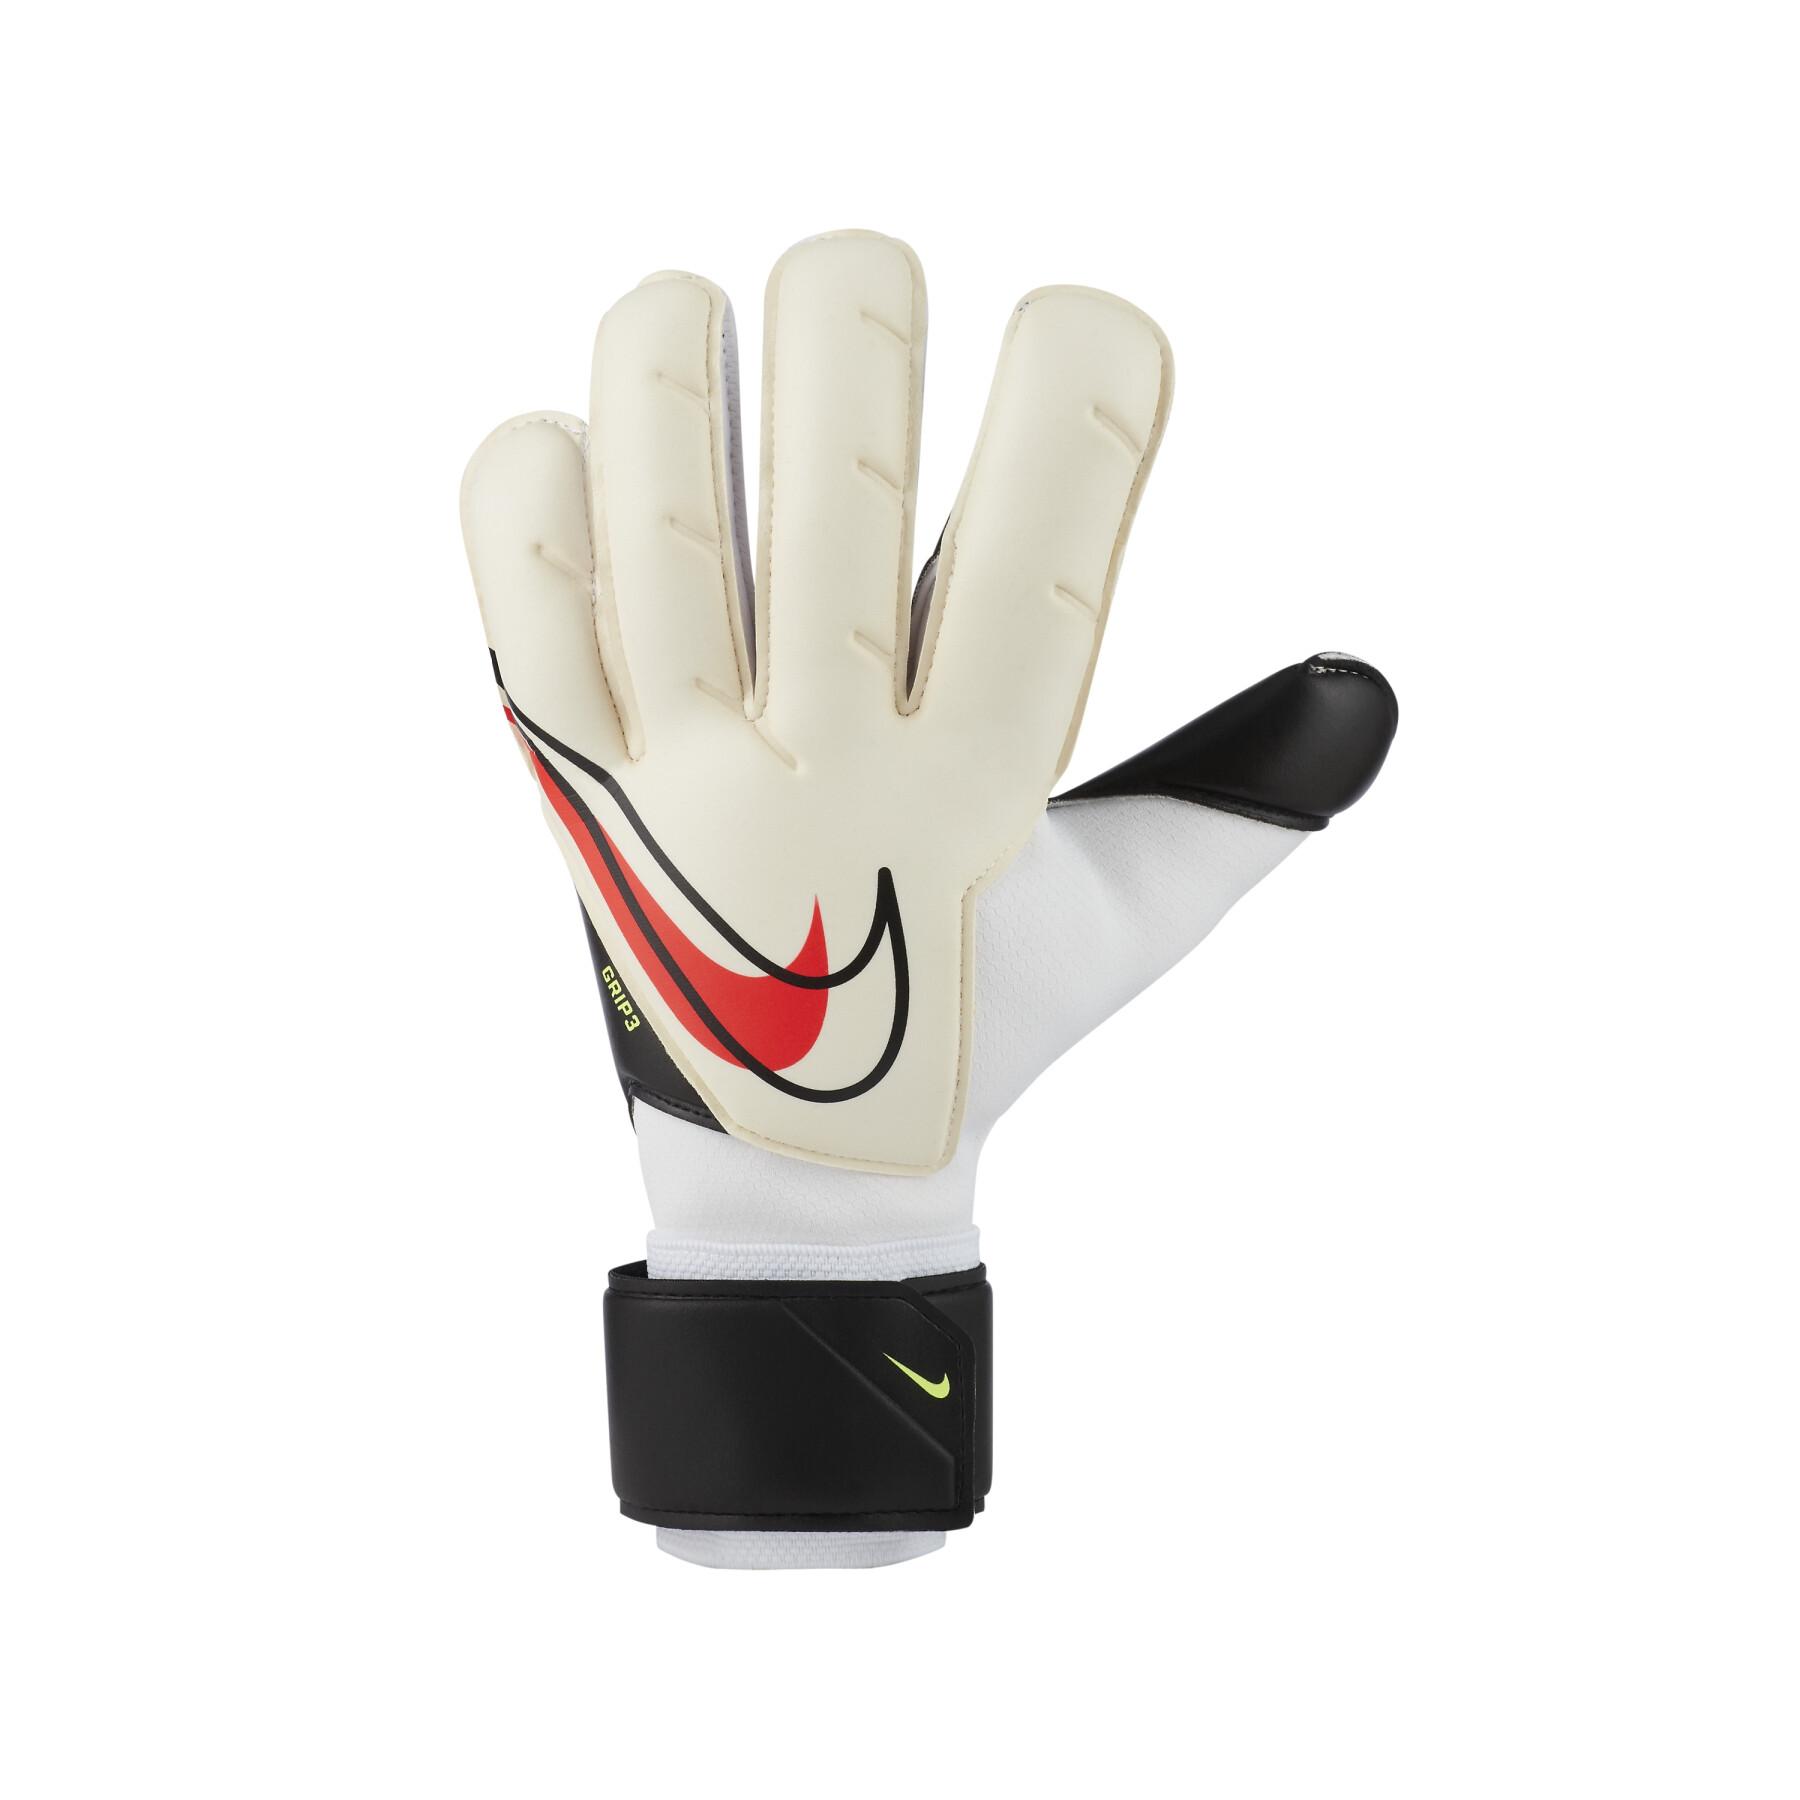 Gariden handschoenen Nike Grip3